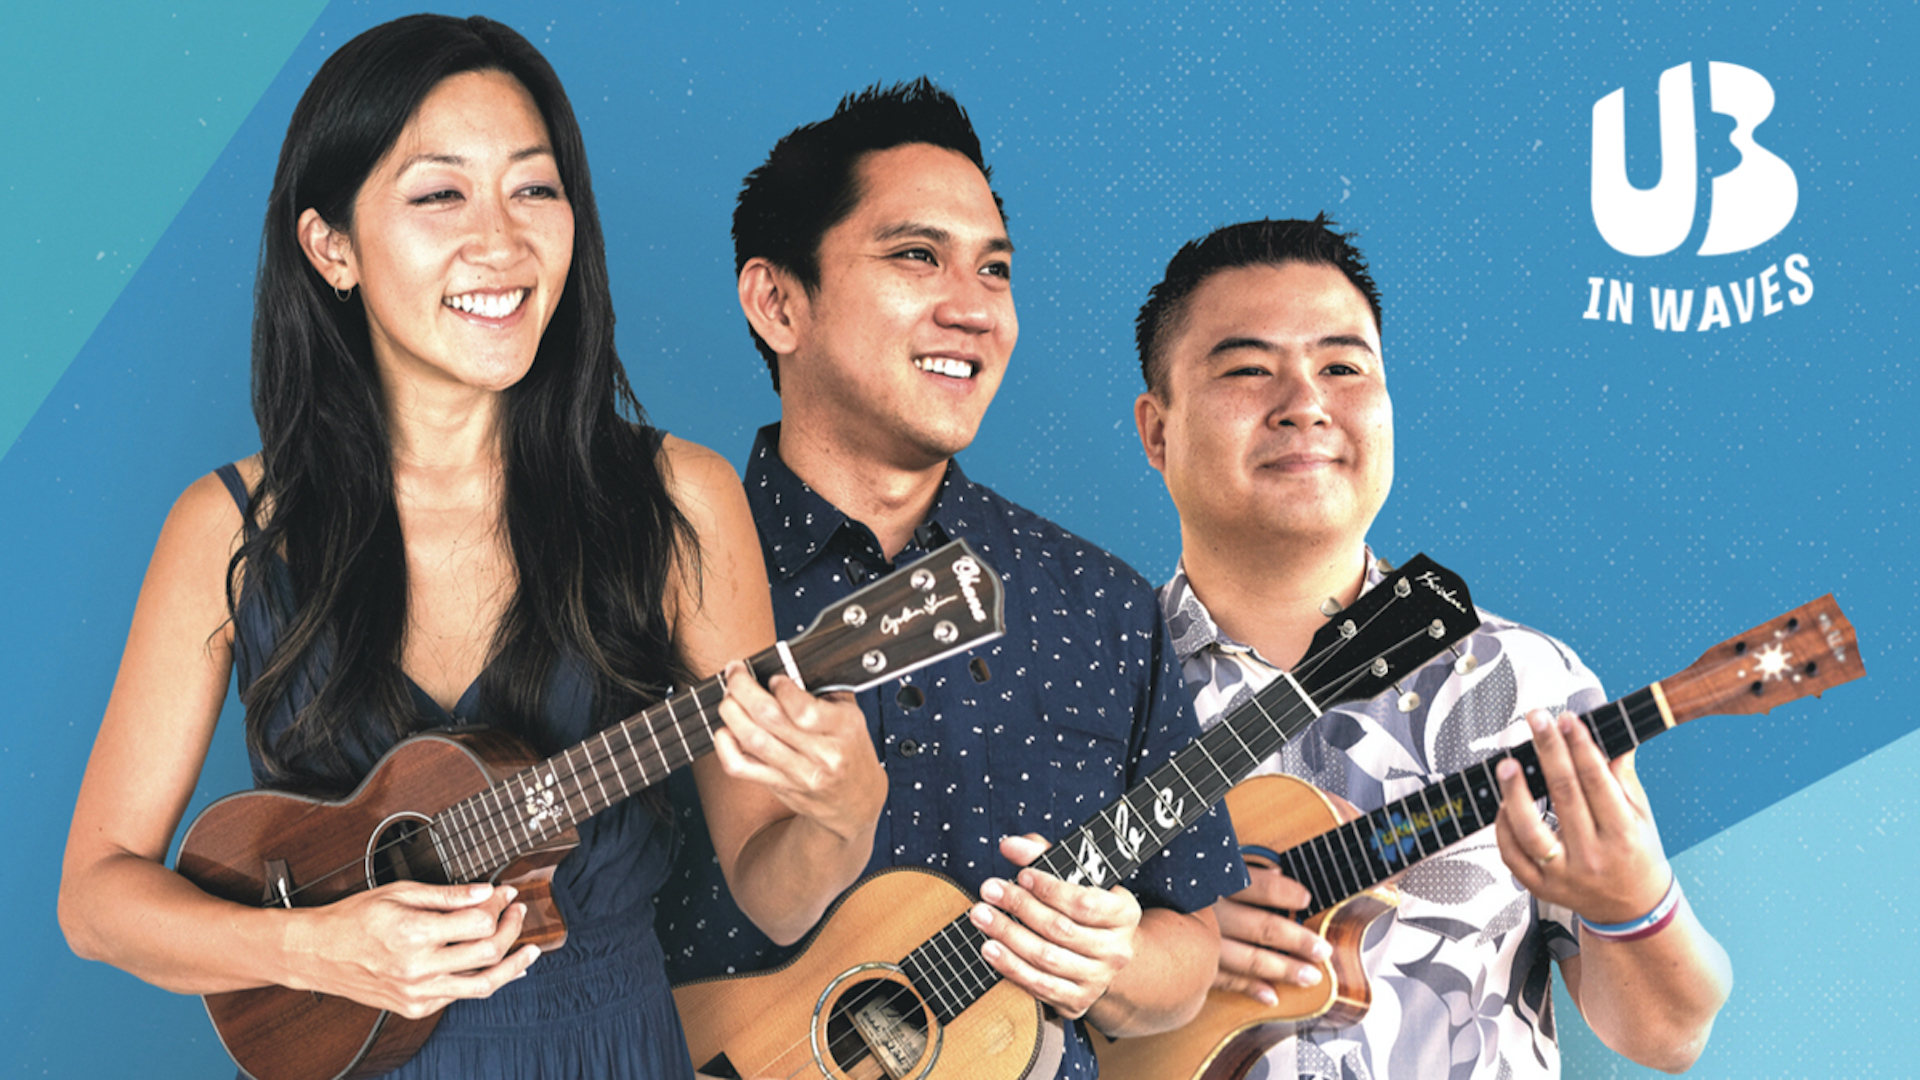 U3, Cynthia Lin, Abe Lagrimas Jr, Ukulenny posing with signature ukuleles